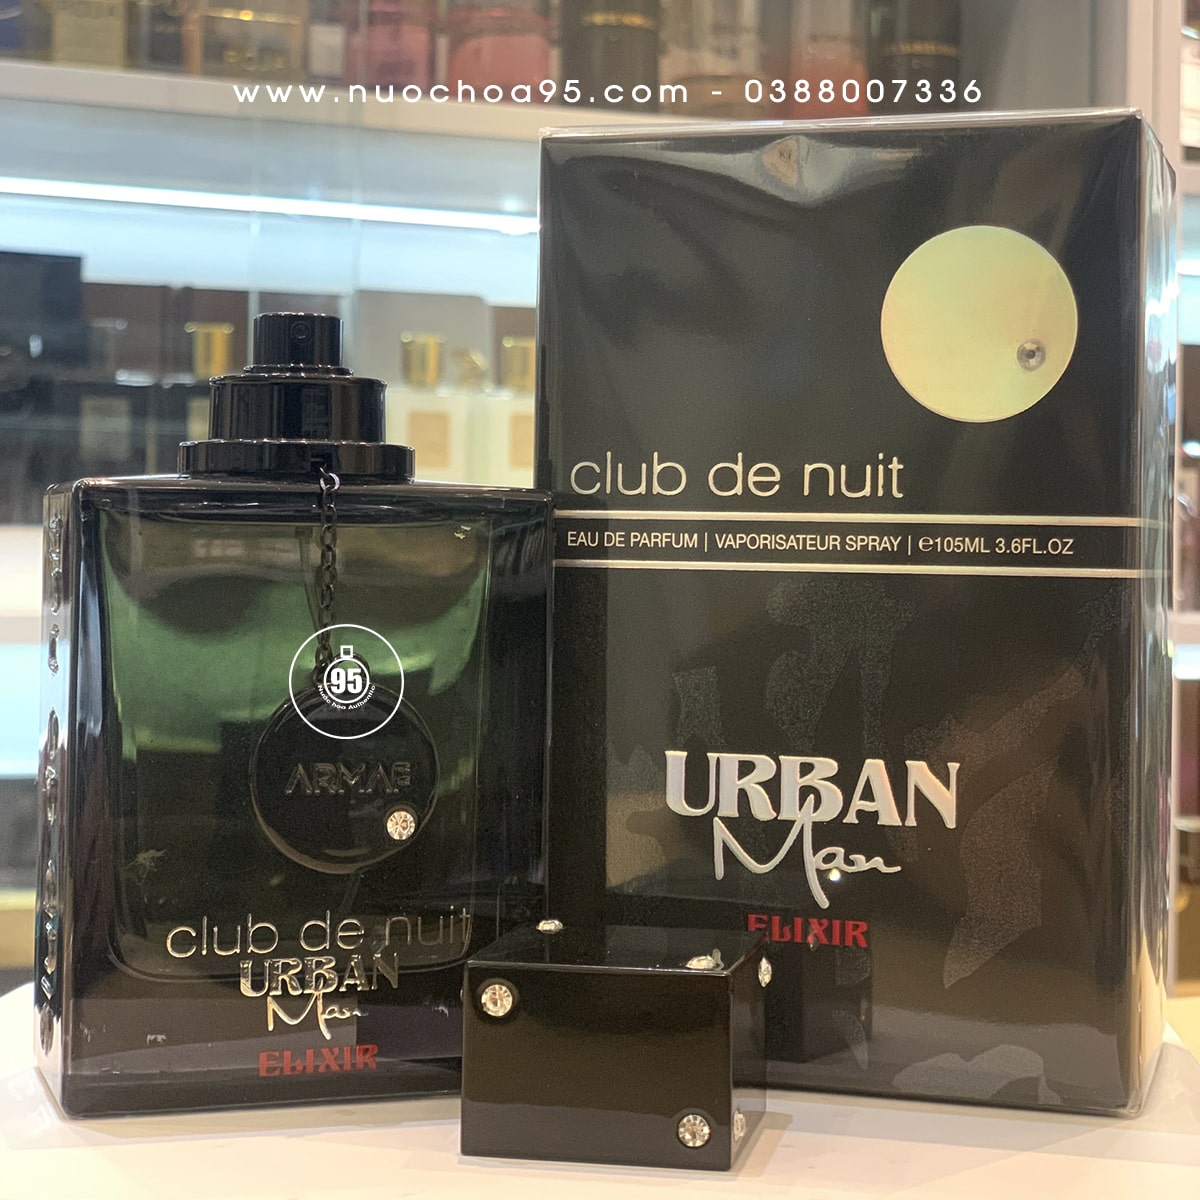 Nước hoa Club De Nuit Urban Elixir - Ảnh 3